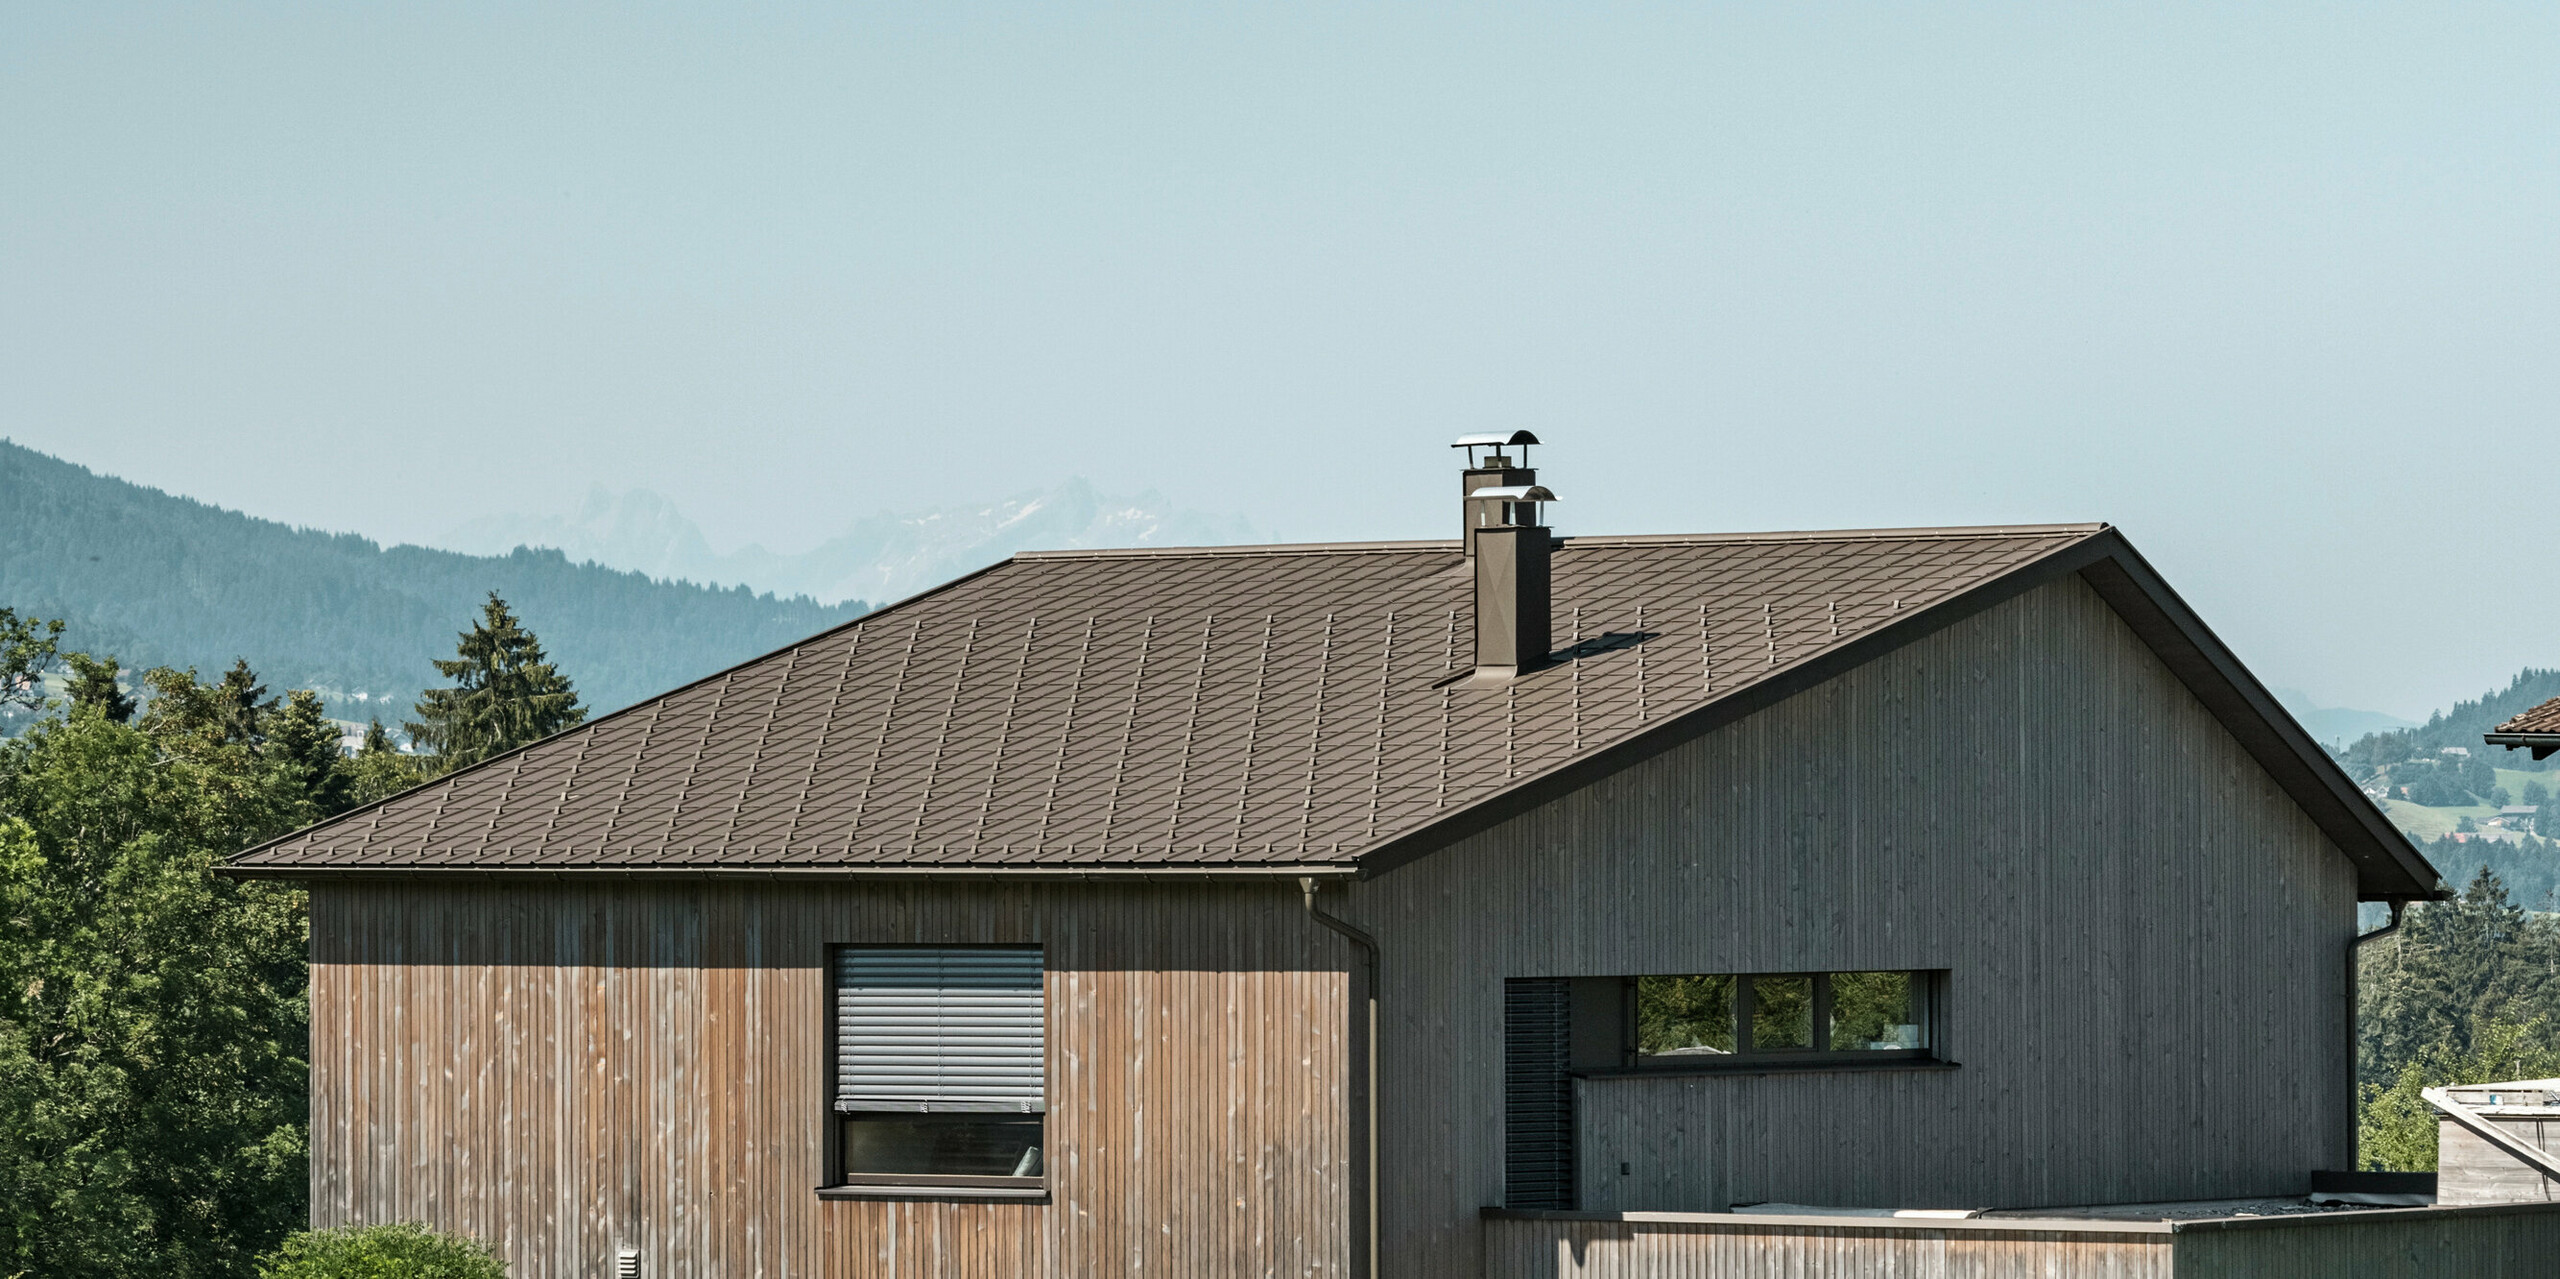 Dřevěná fasáda v kombinaci s hliníkovou střechou působí harmonicky